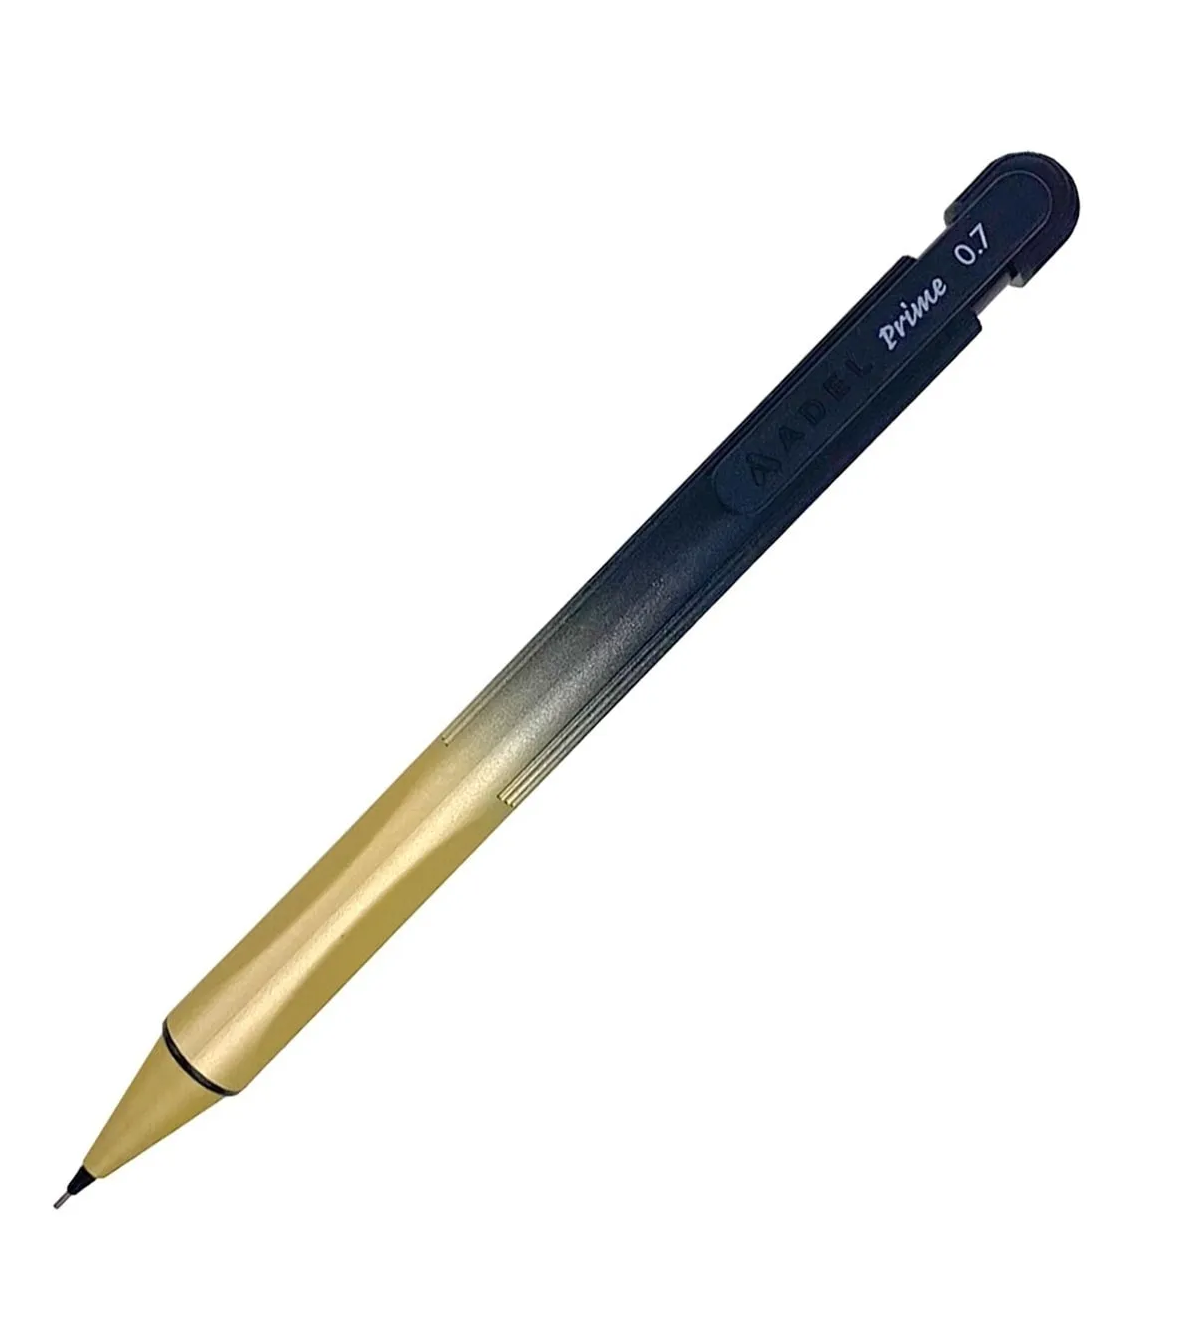 Adel Mash Mekanizmalı Versatil Kalem Metalik Altın-Siyah 0,7mm